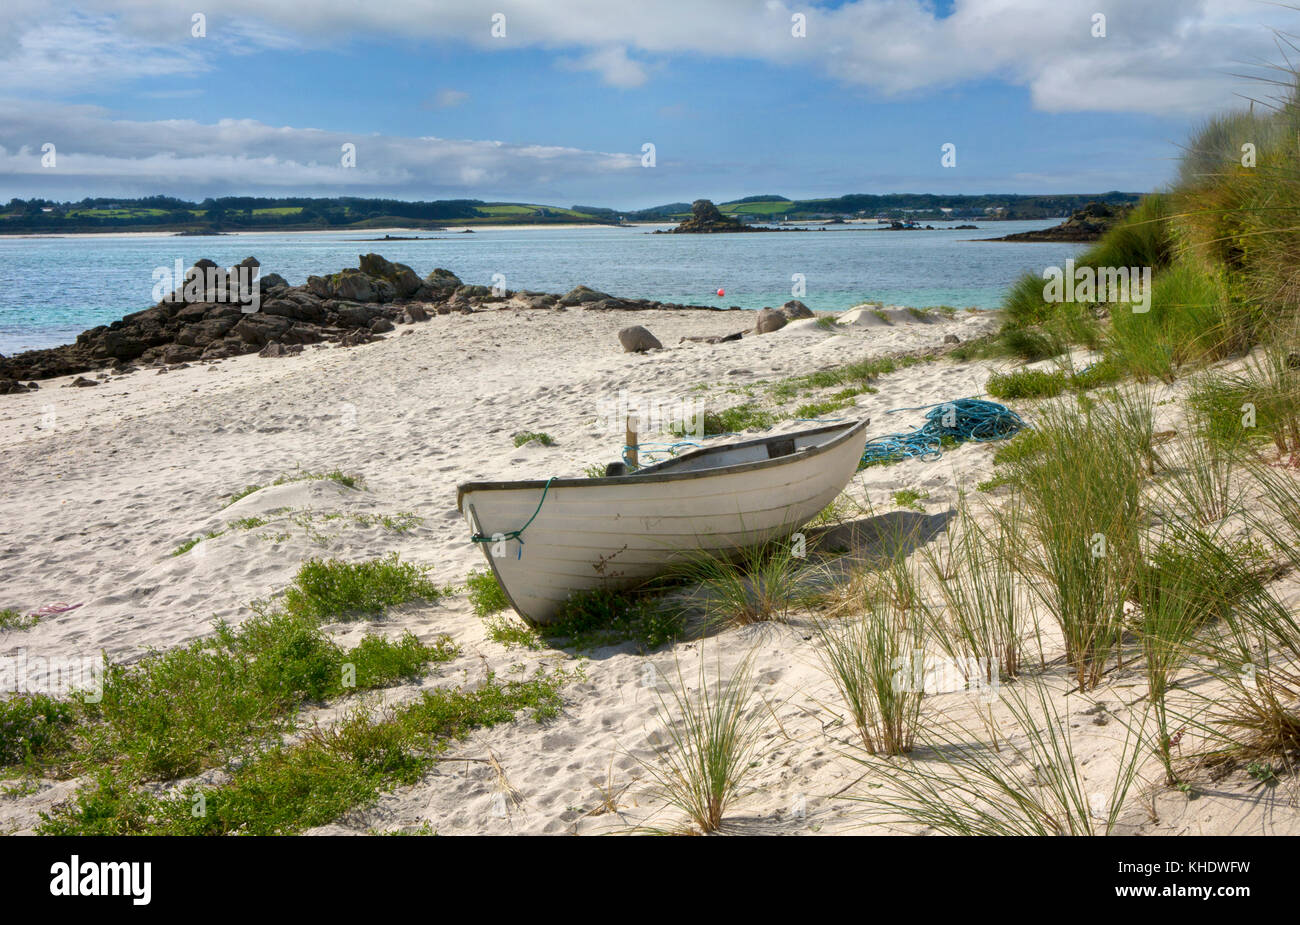 Piccola barca a remi sulla spiaggia,lawrence bay,st martin's,Isole Scilly Foto Stock